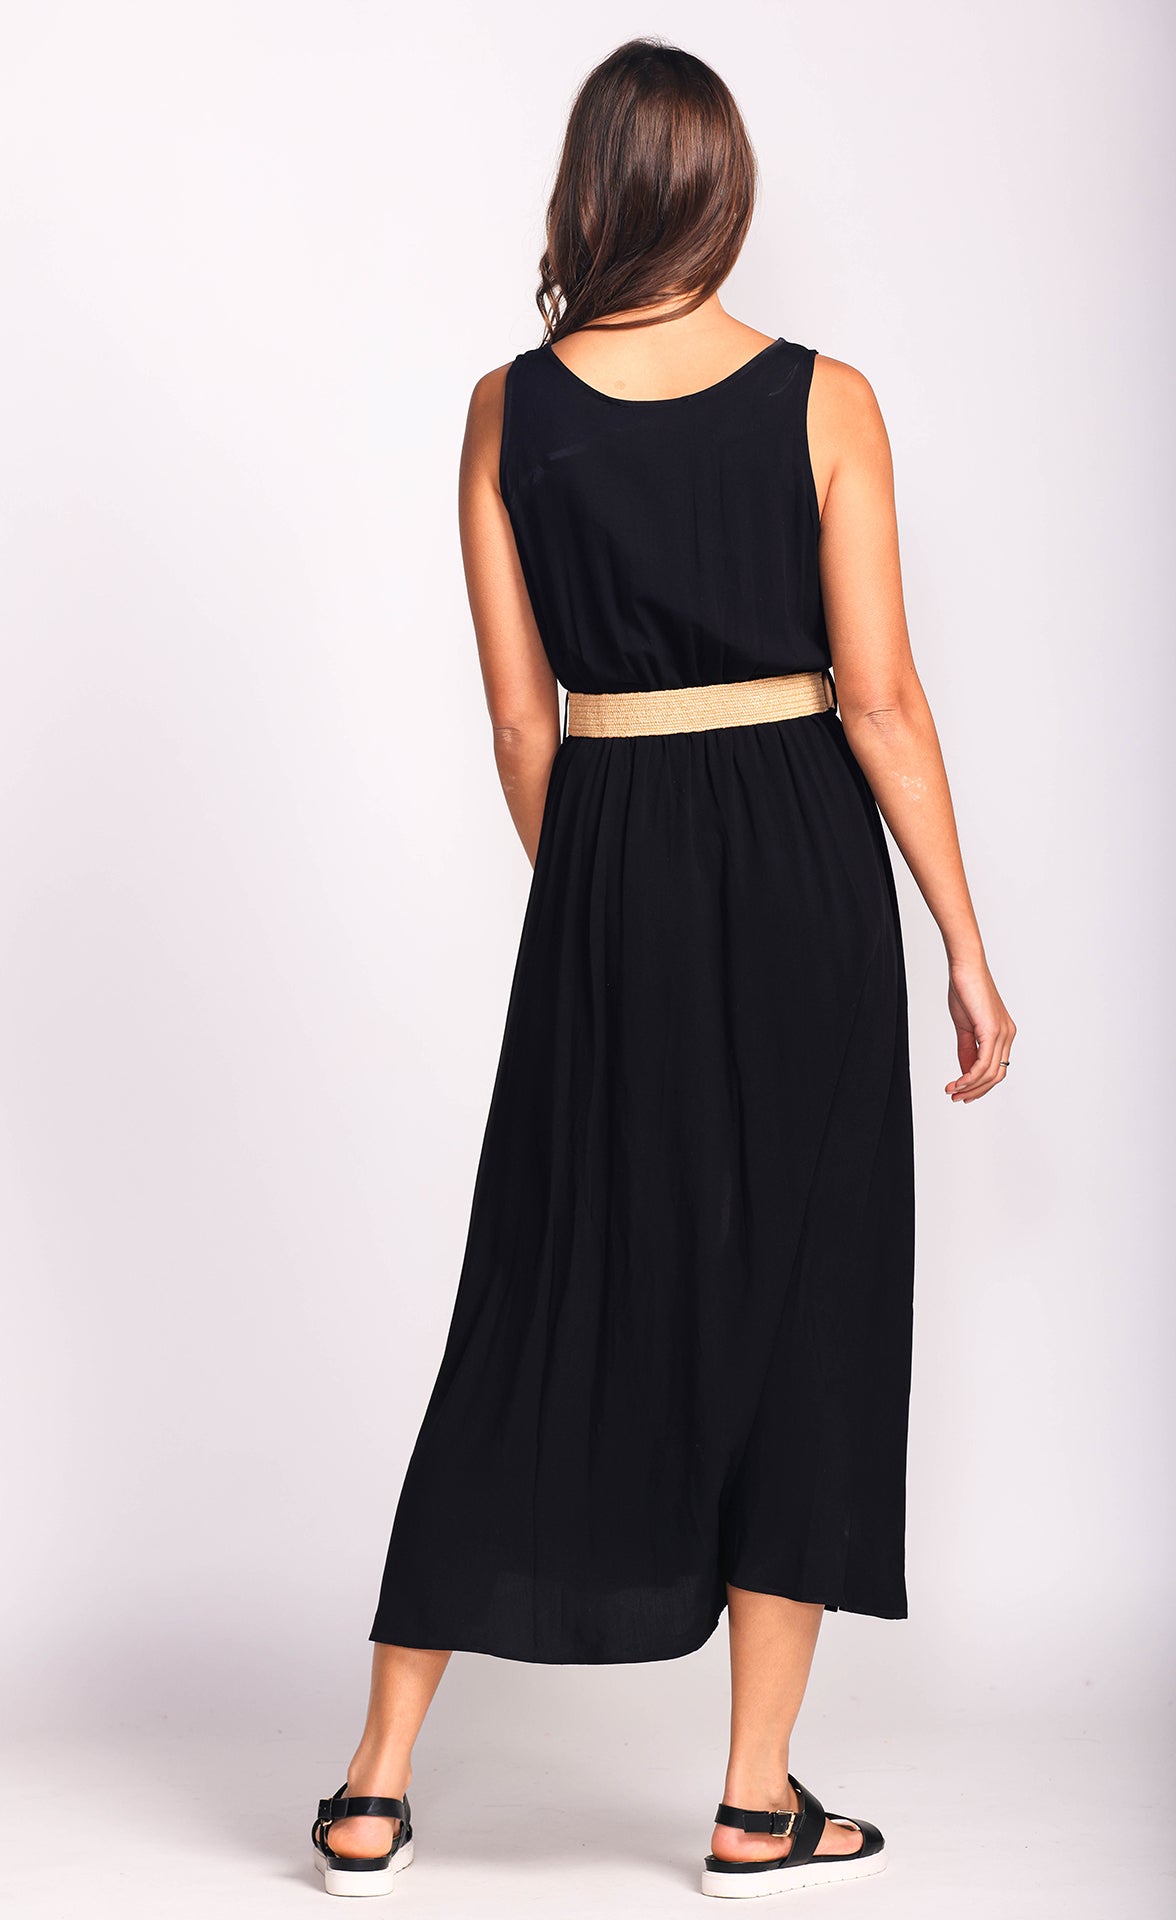 Adelaide Dress - Black